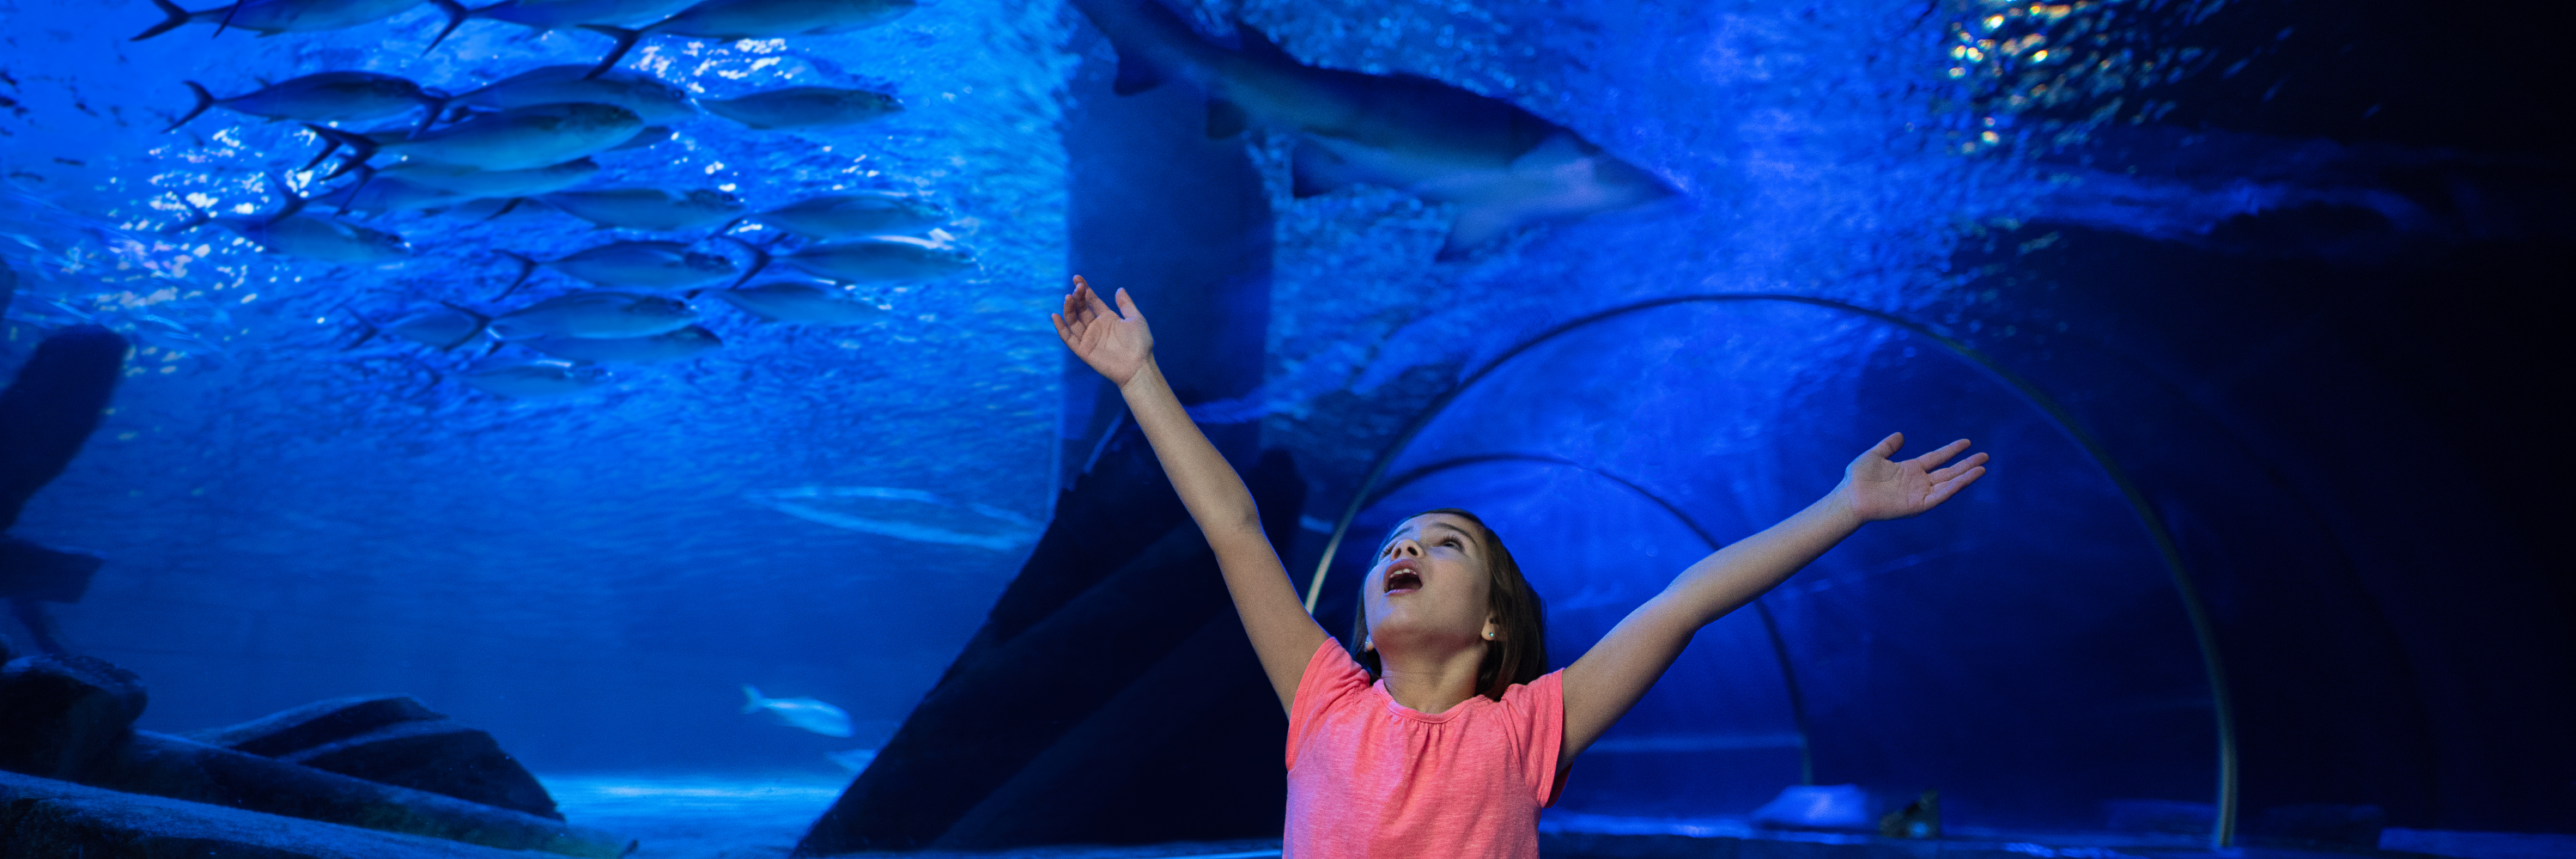 The State's Largest Aquarium | SEA LIFE Minnesota Aquarium